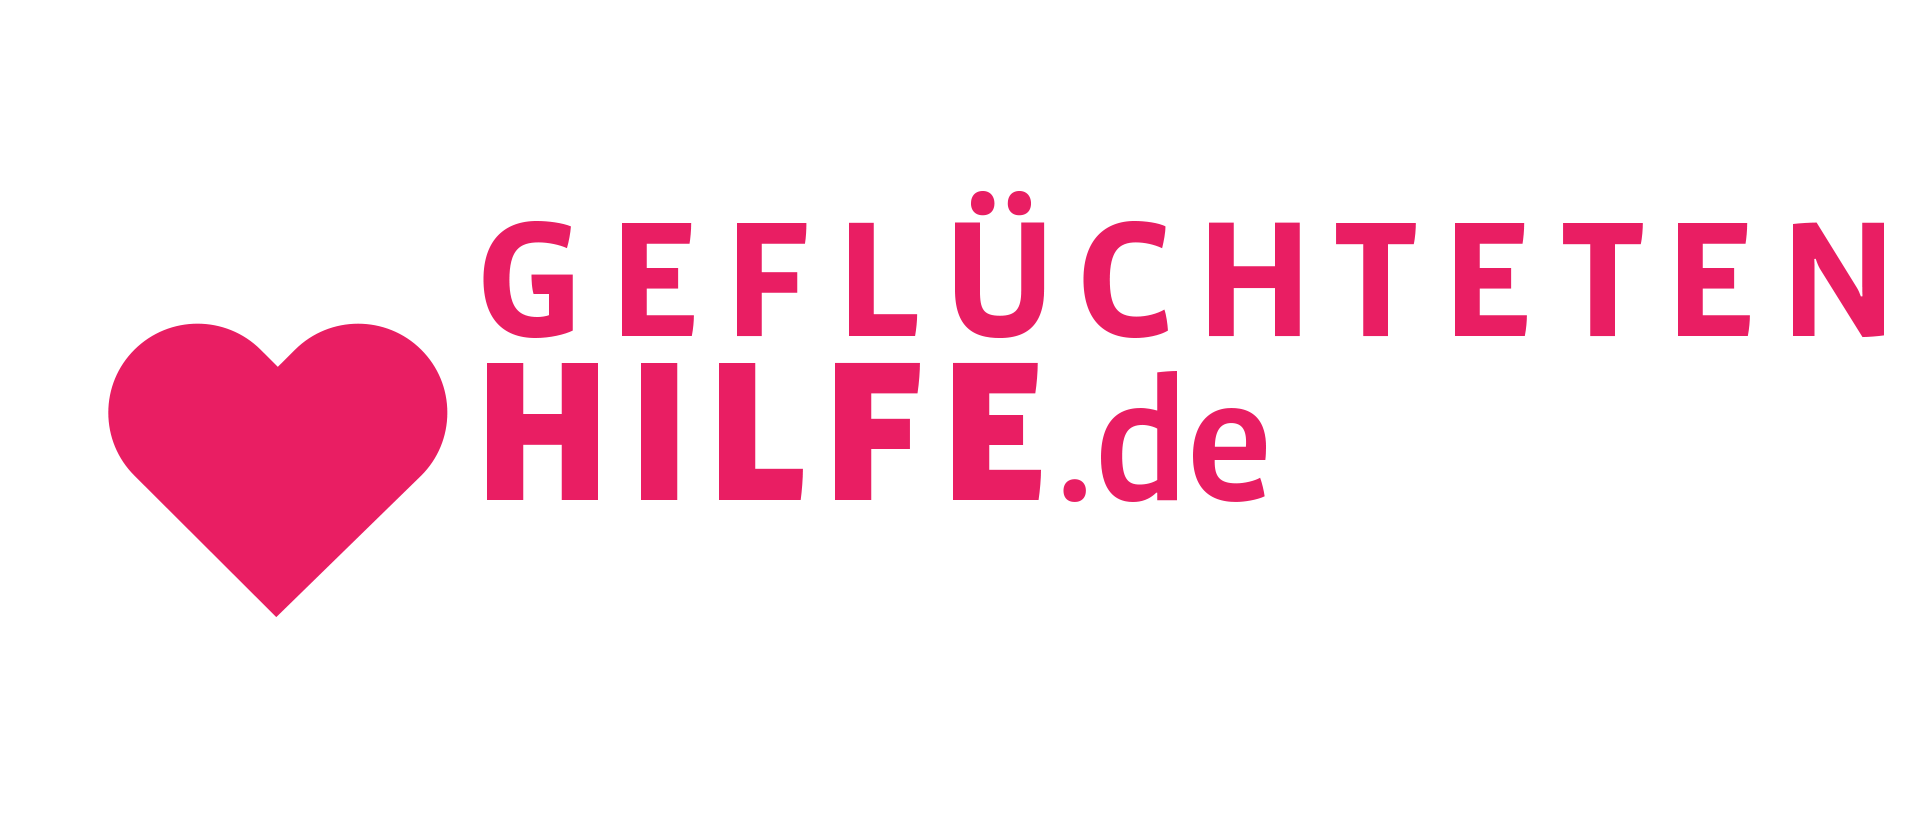 Gefluechtetenhilfe.de Logo